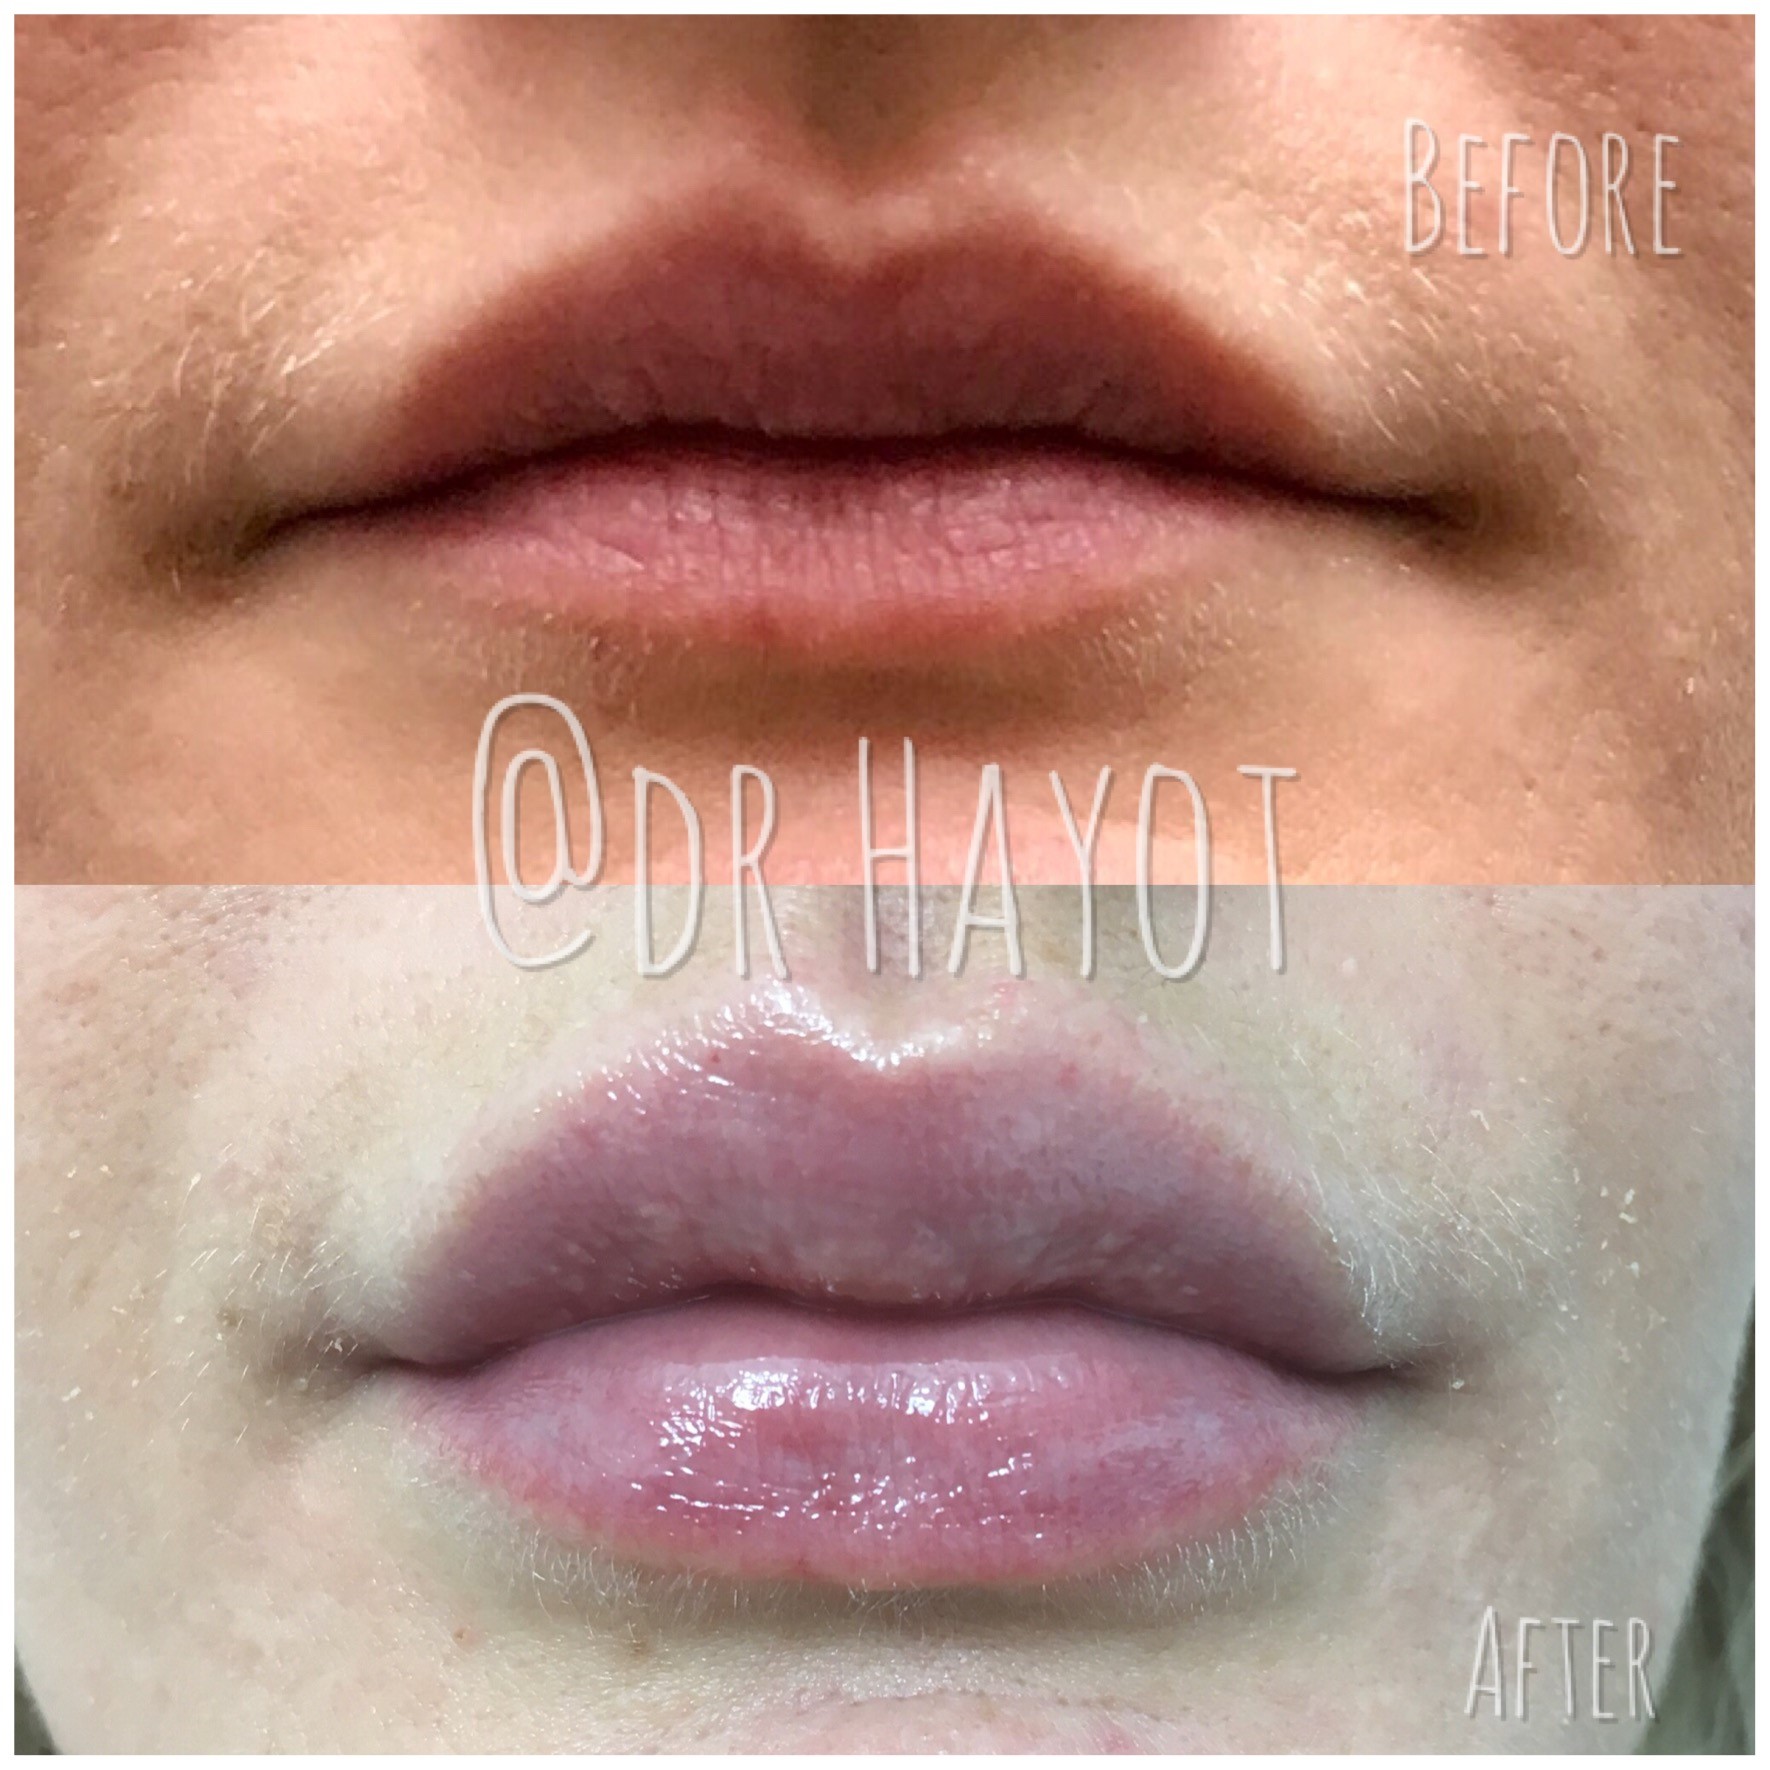 Dermal Filler for lips results